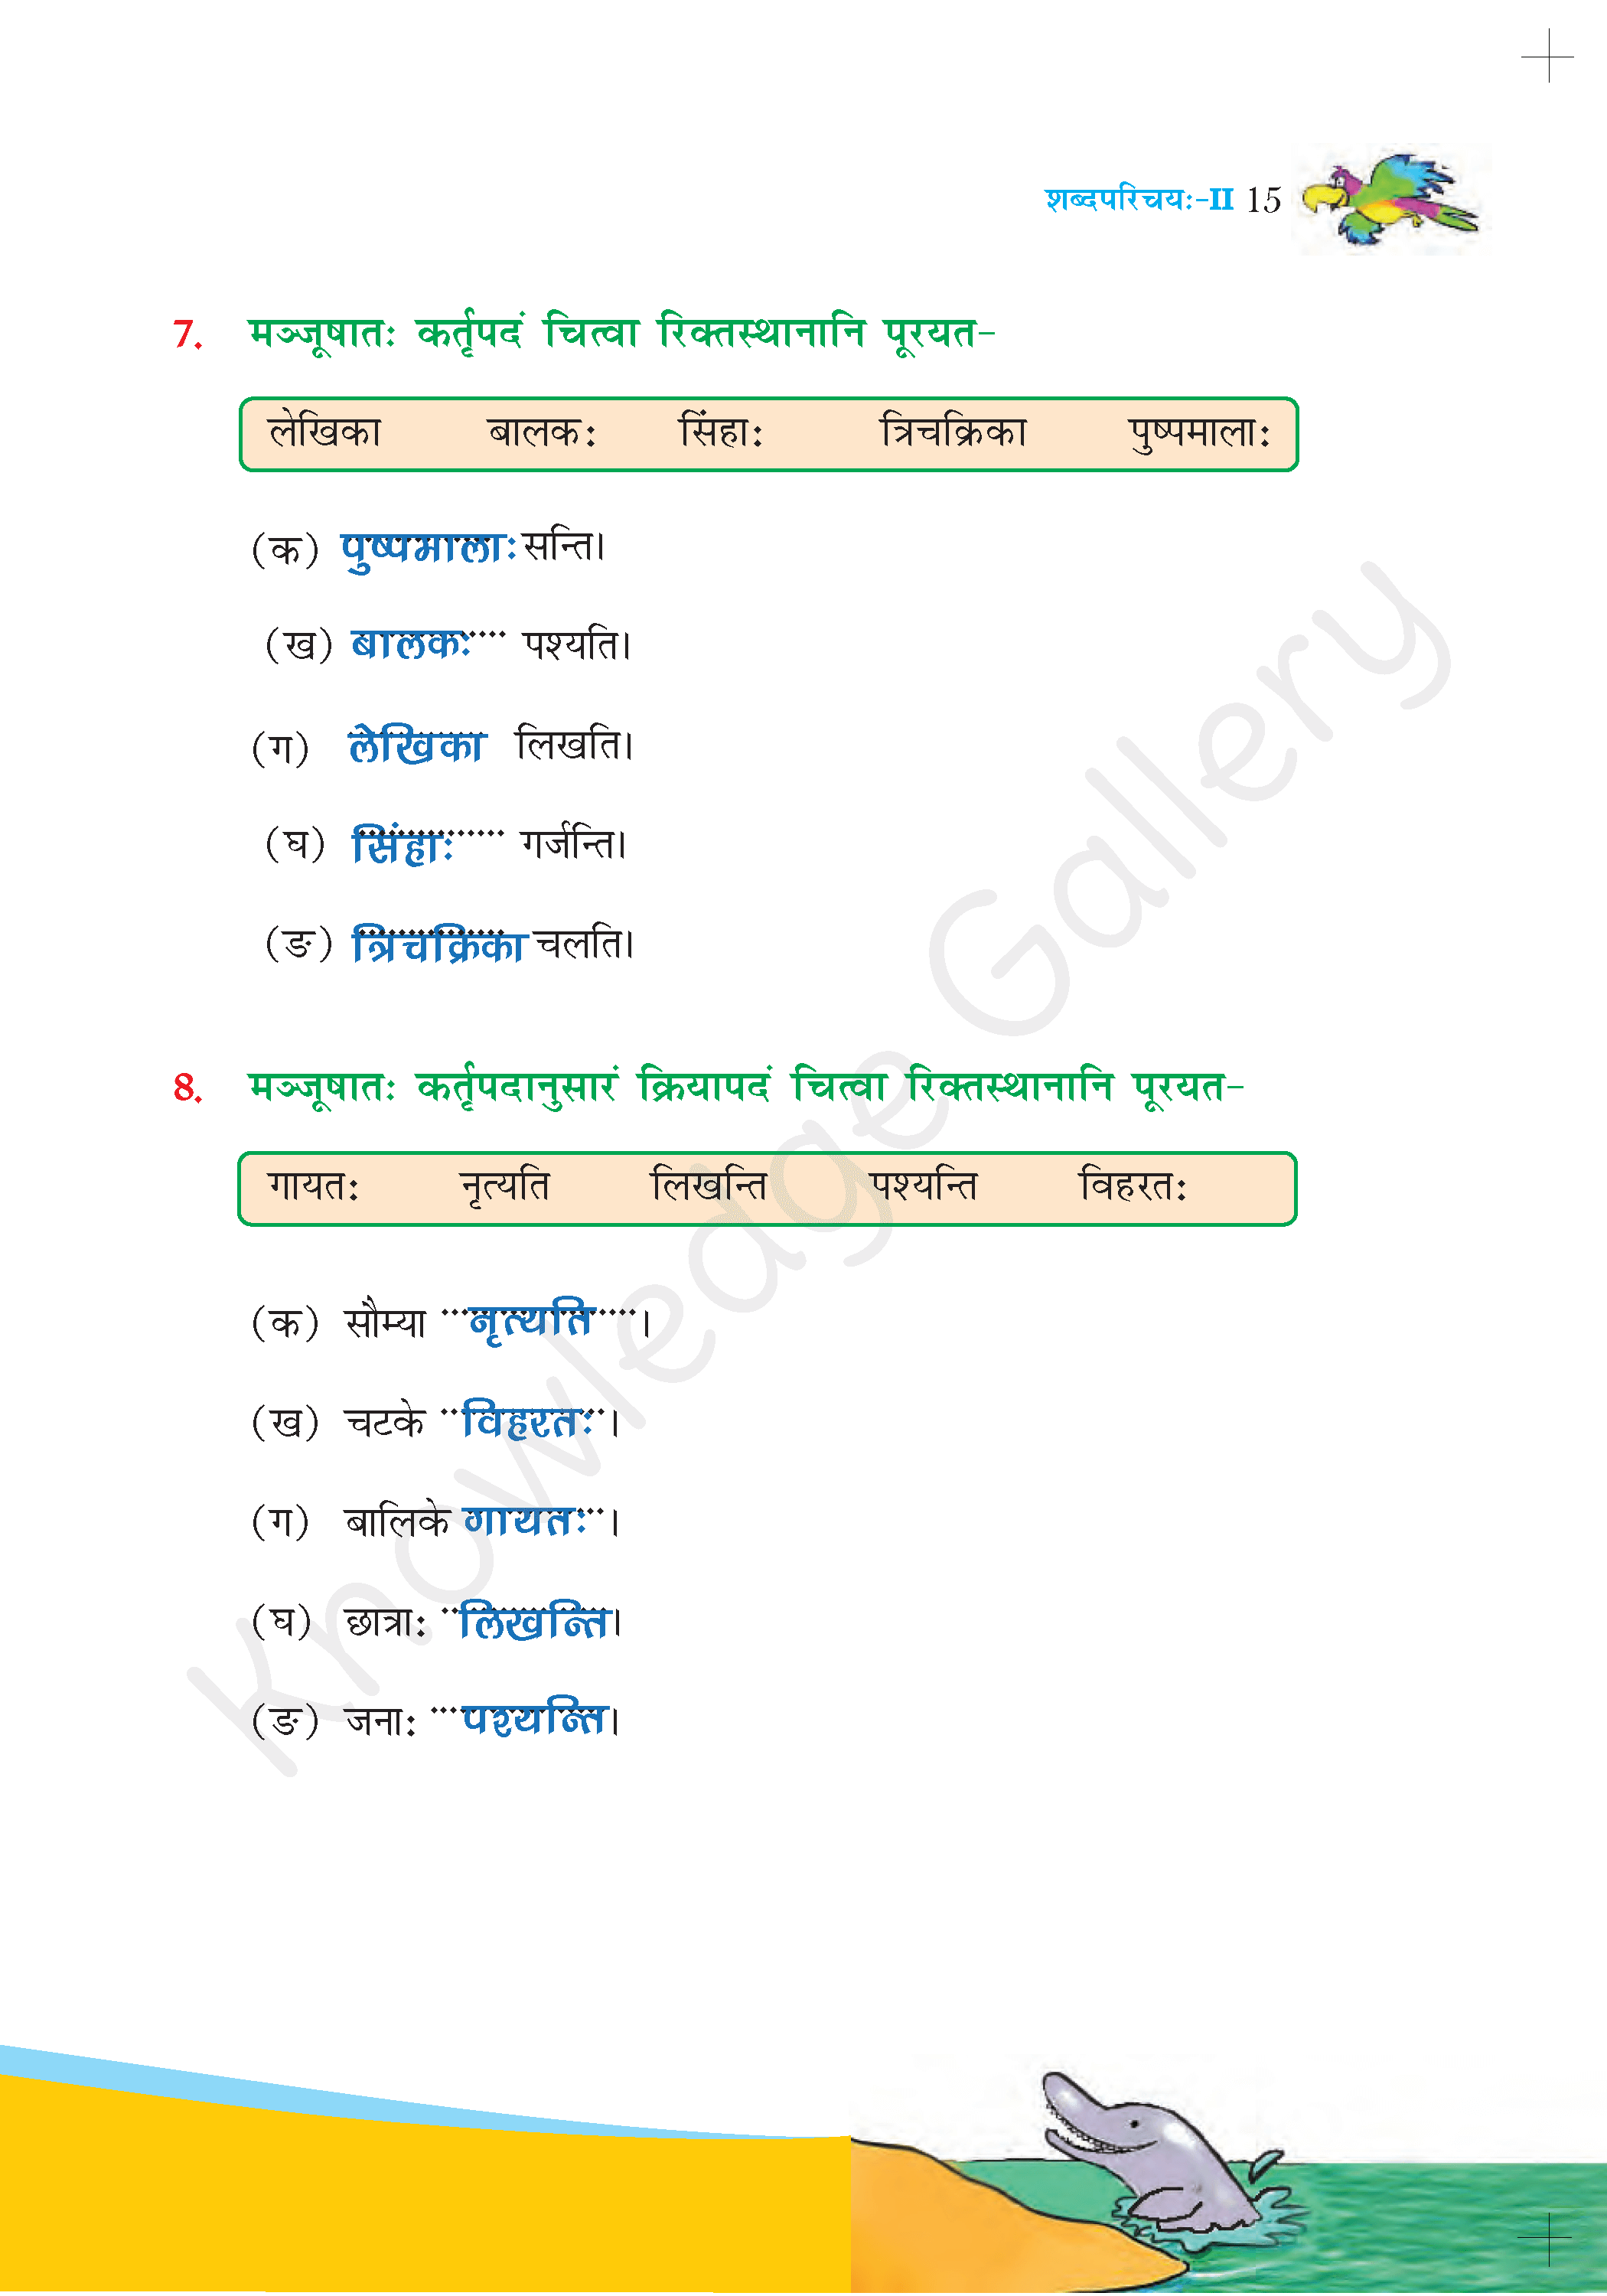 NCERT Solution For Class 6 Sanskrit Chapter 2 part 7